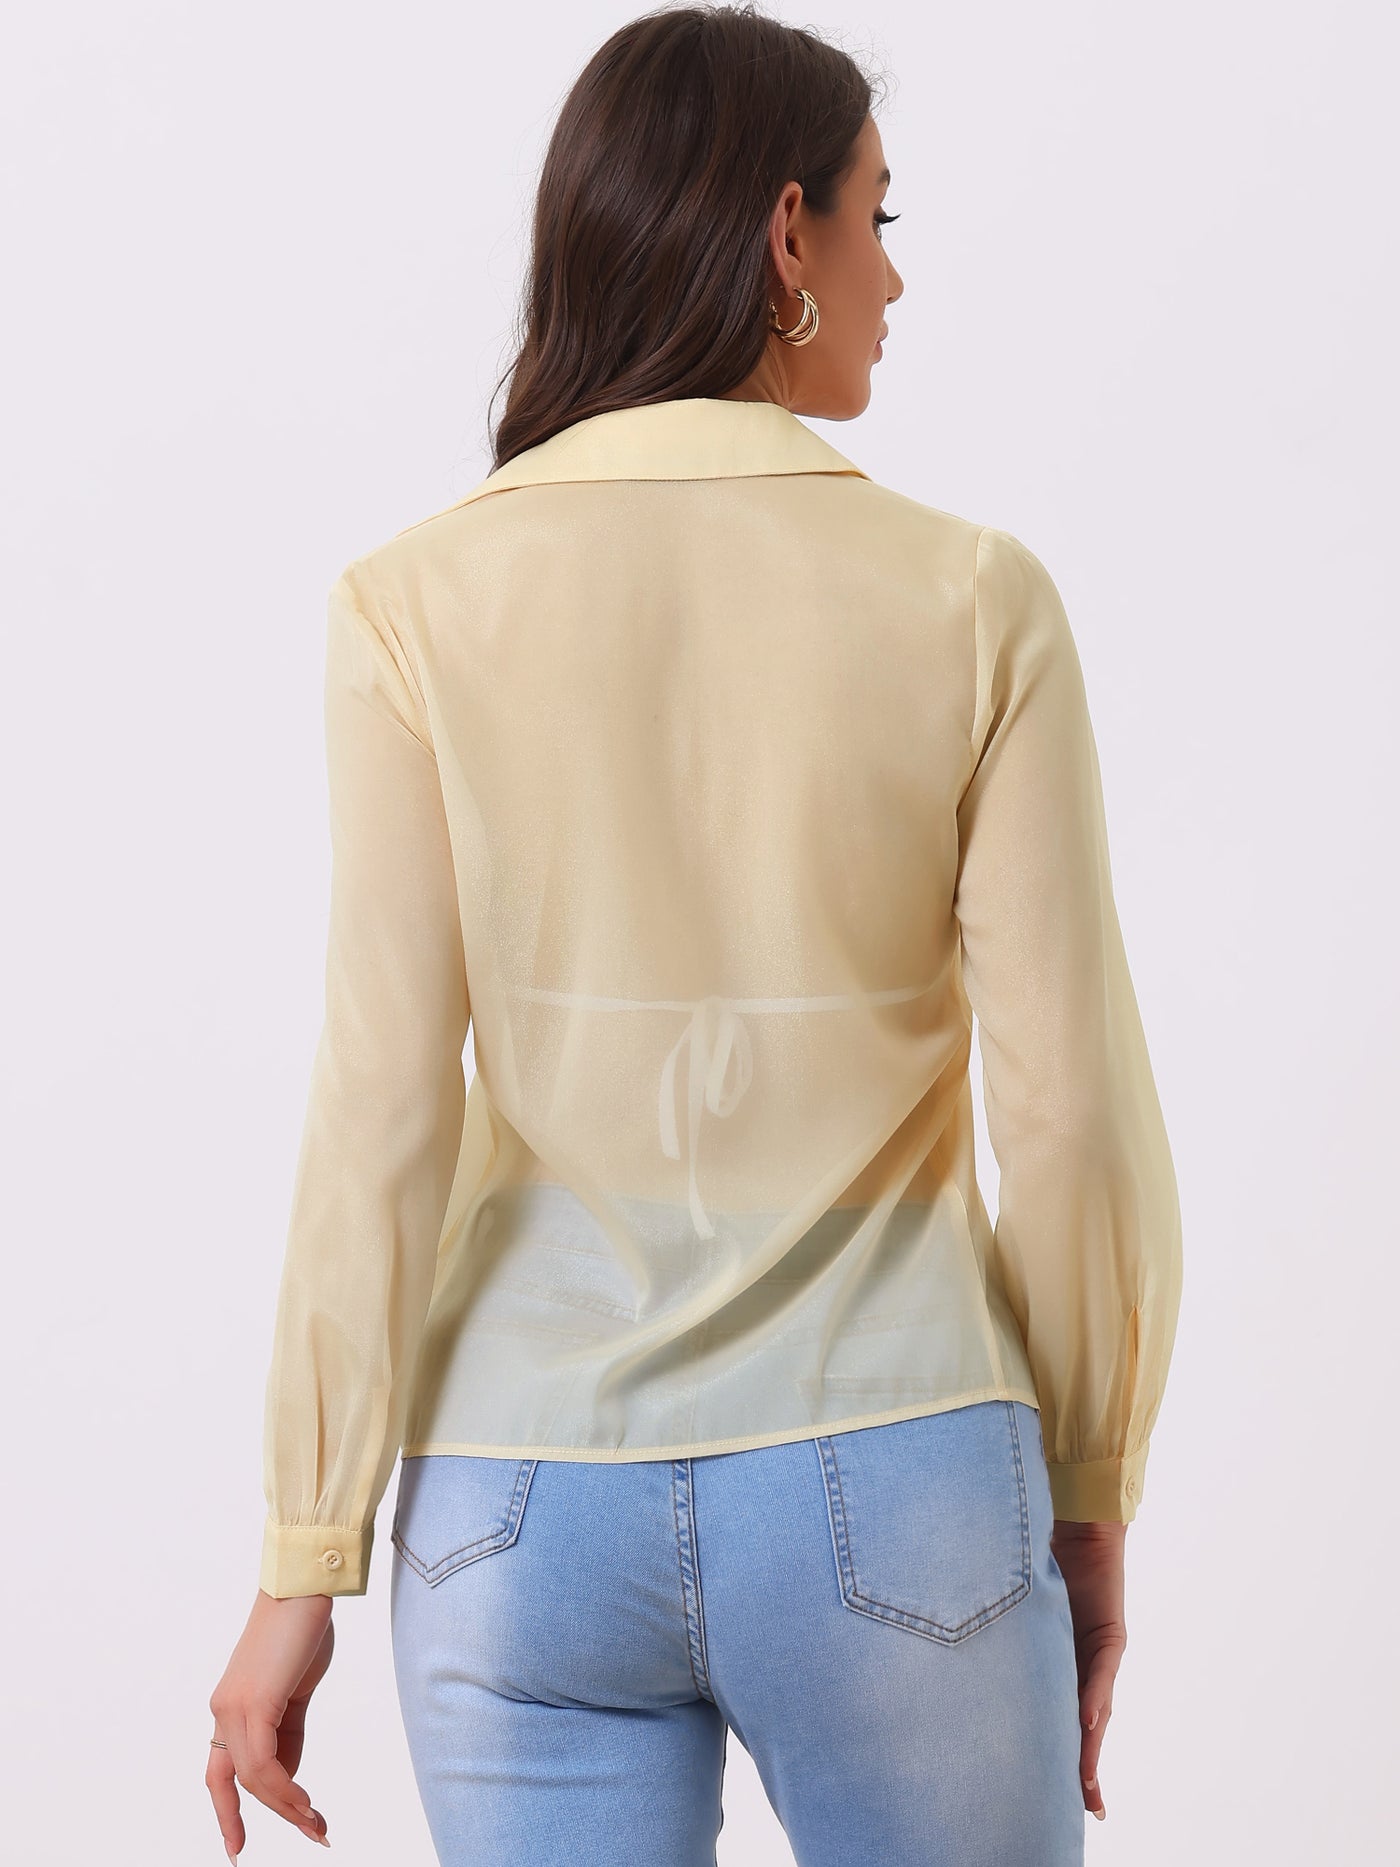 Allegra K Sheer Button Up Blouse See Through Mesh Long Sleeve Shirt Tops